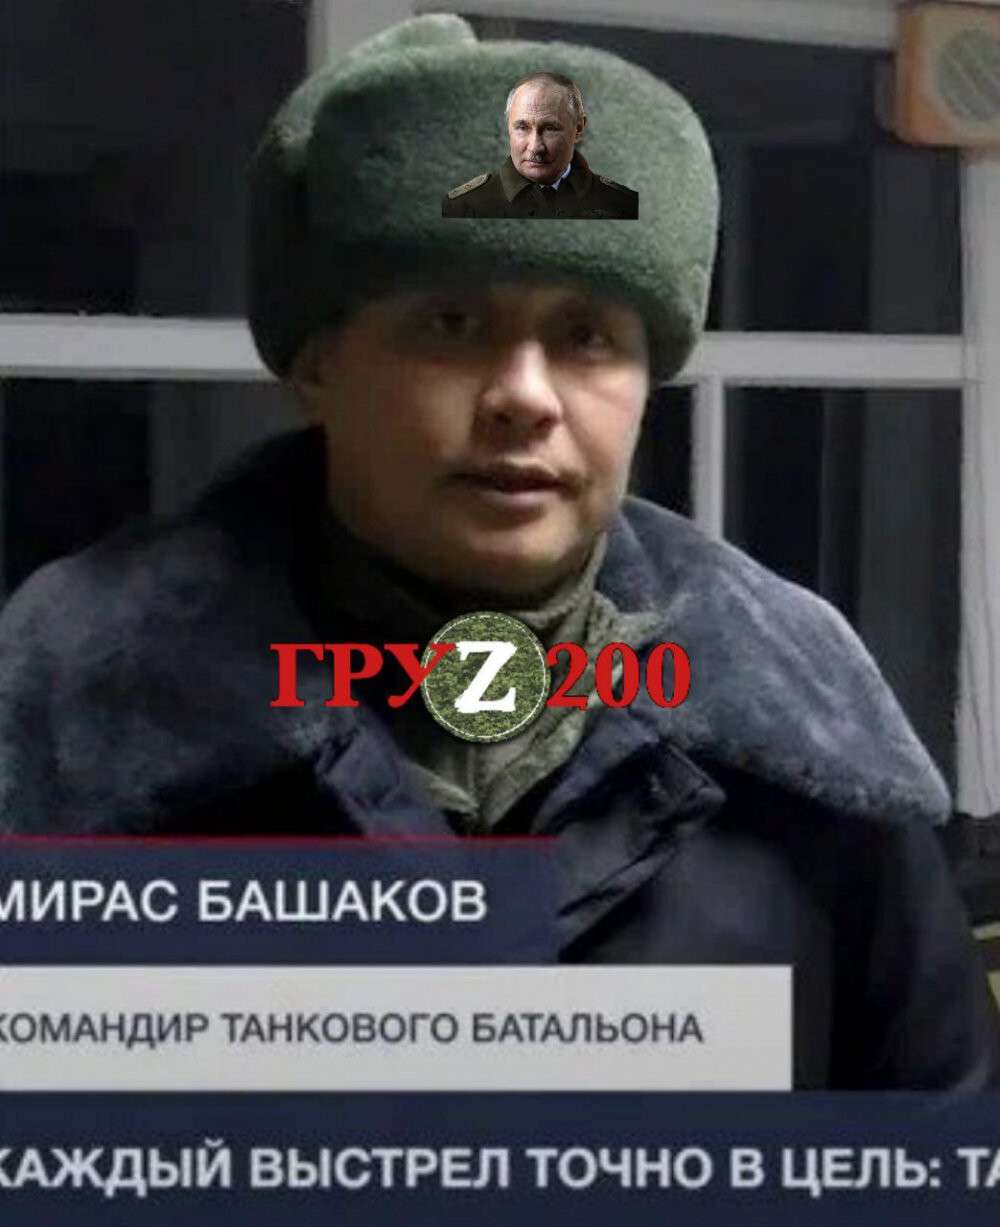 командир танкового батальона, подполковник Мирас Башаков